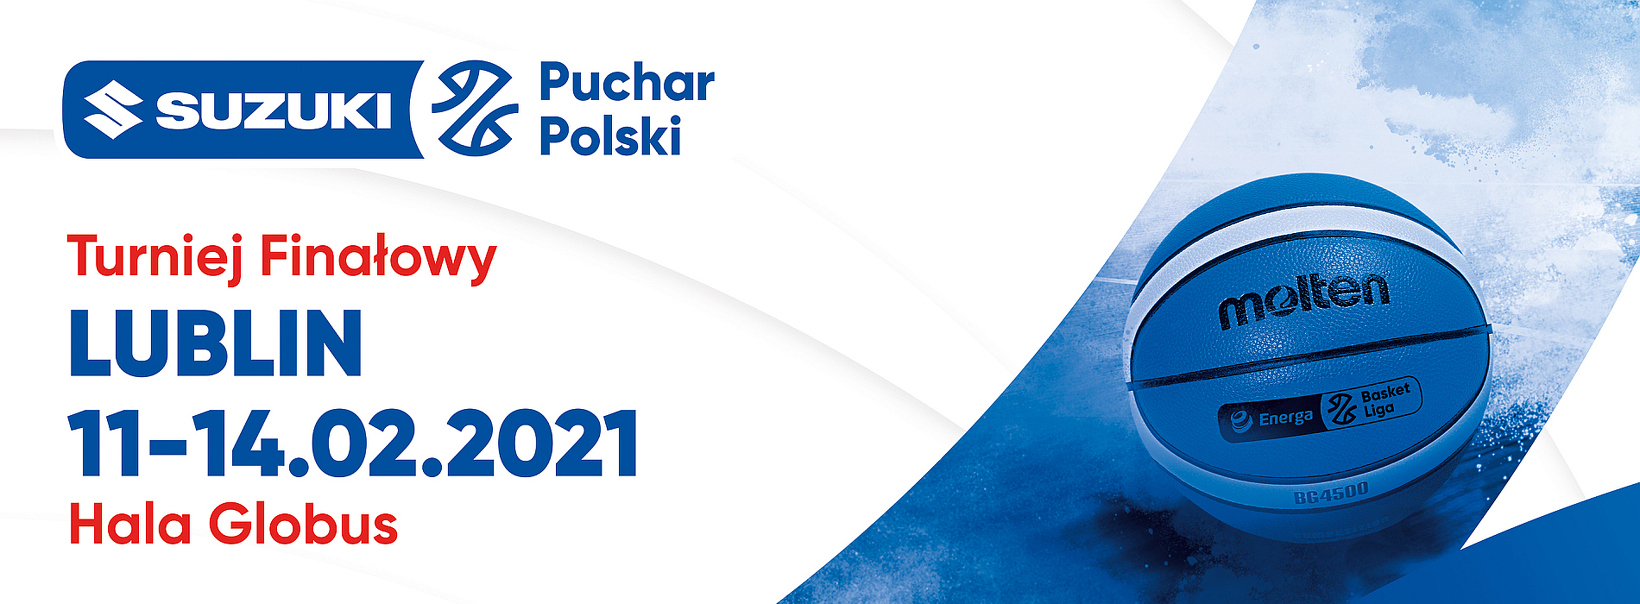 Suzuki Puchar Polski PZKosz:  Pszczółka Start – Arged BMSlam Stal 73:80